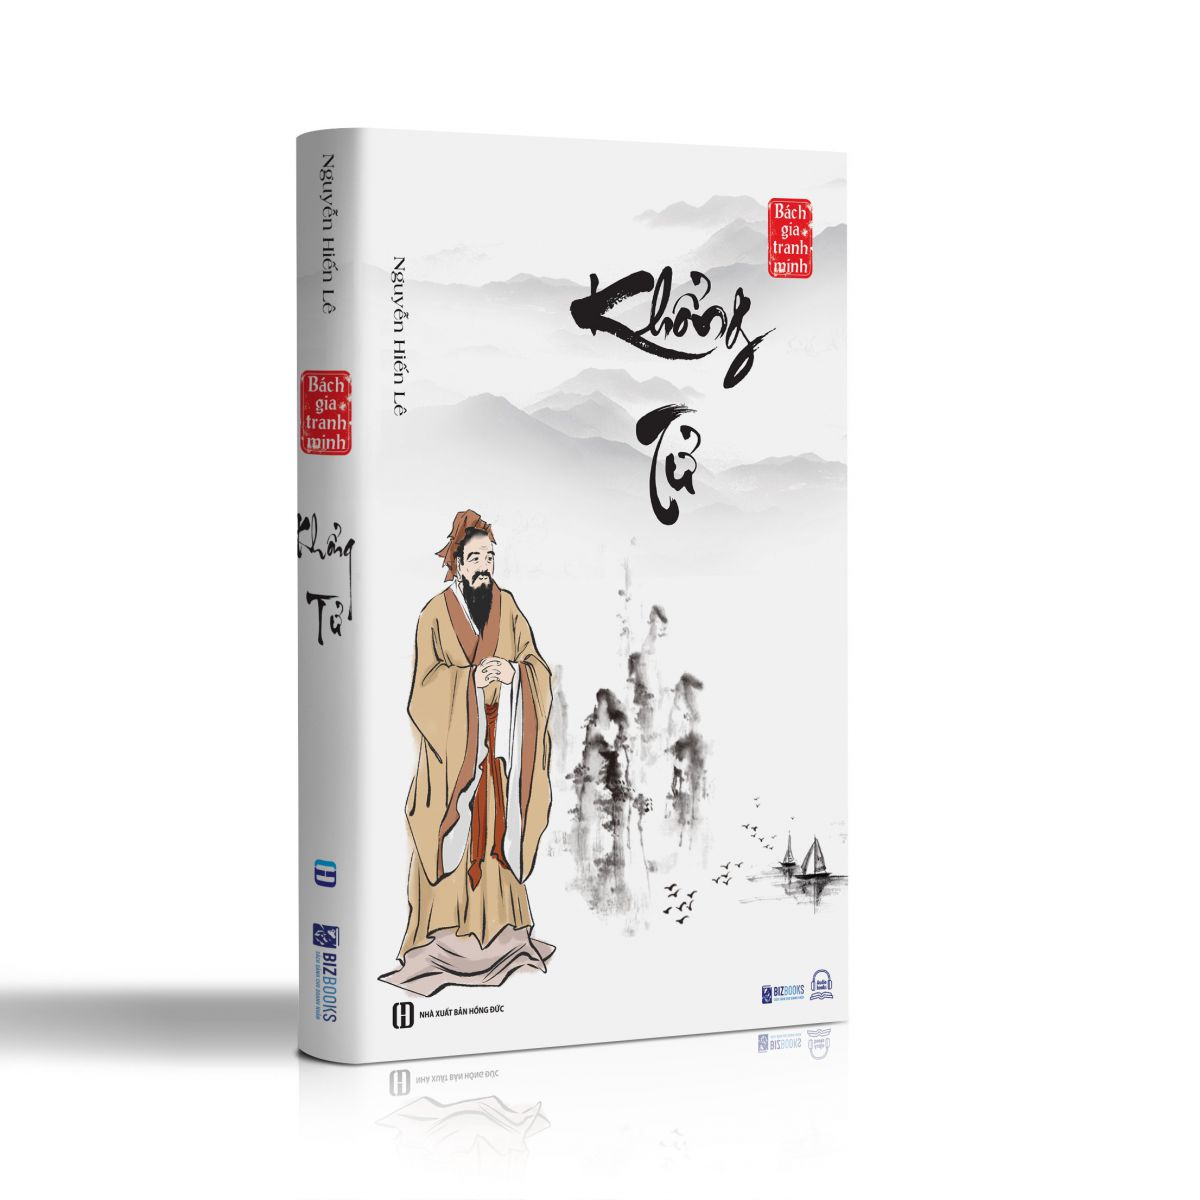 Bách  gia tranh minh - Bộ 8 cuốn sách quý hiếm của Nguyễn Hiến Lê 8